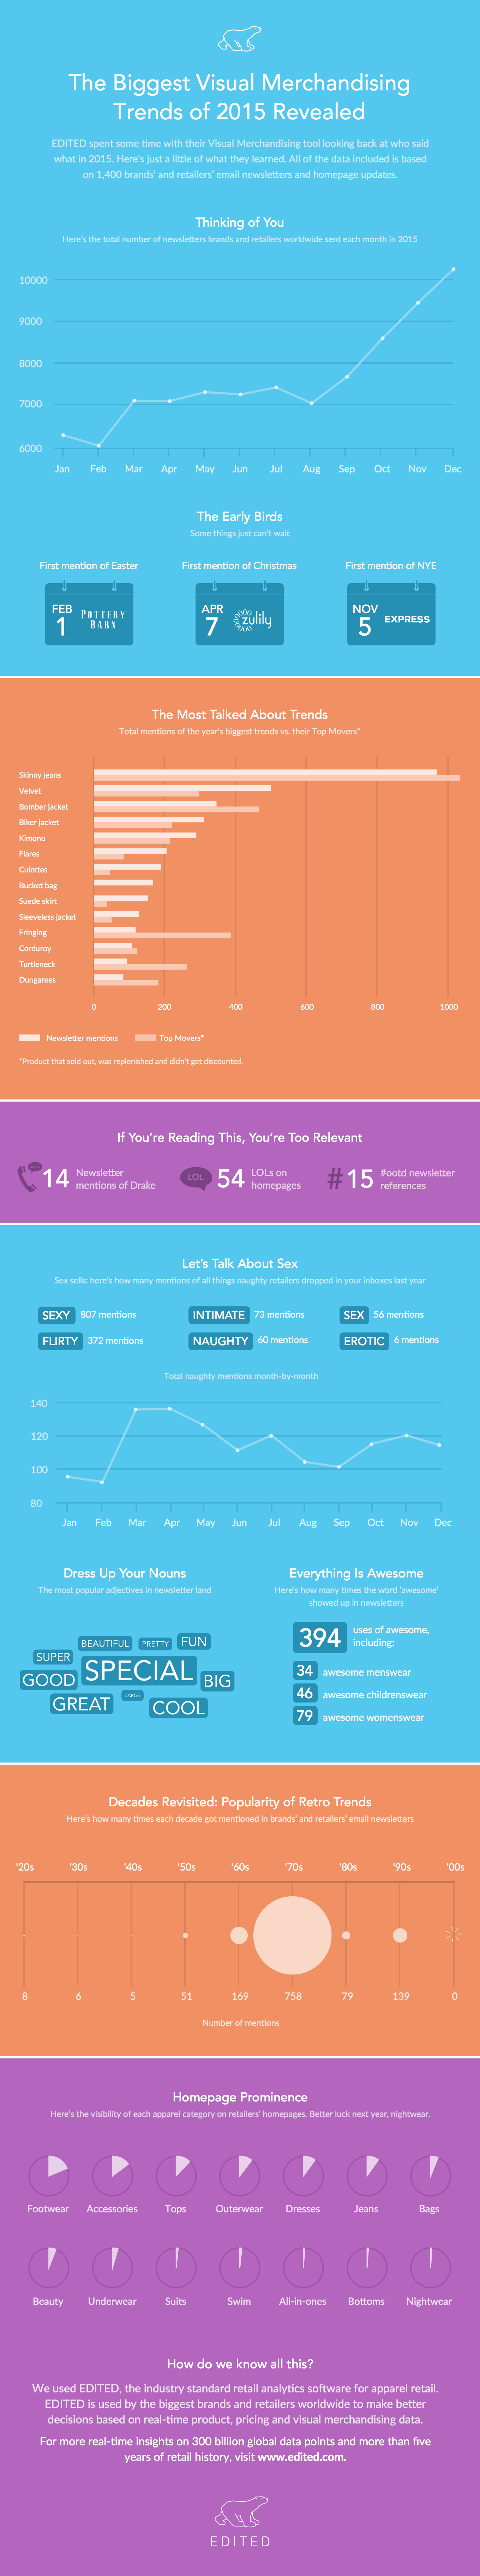 EDITED-Visual-Merchandising-Infographic-2015